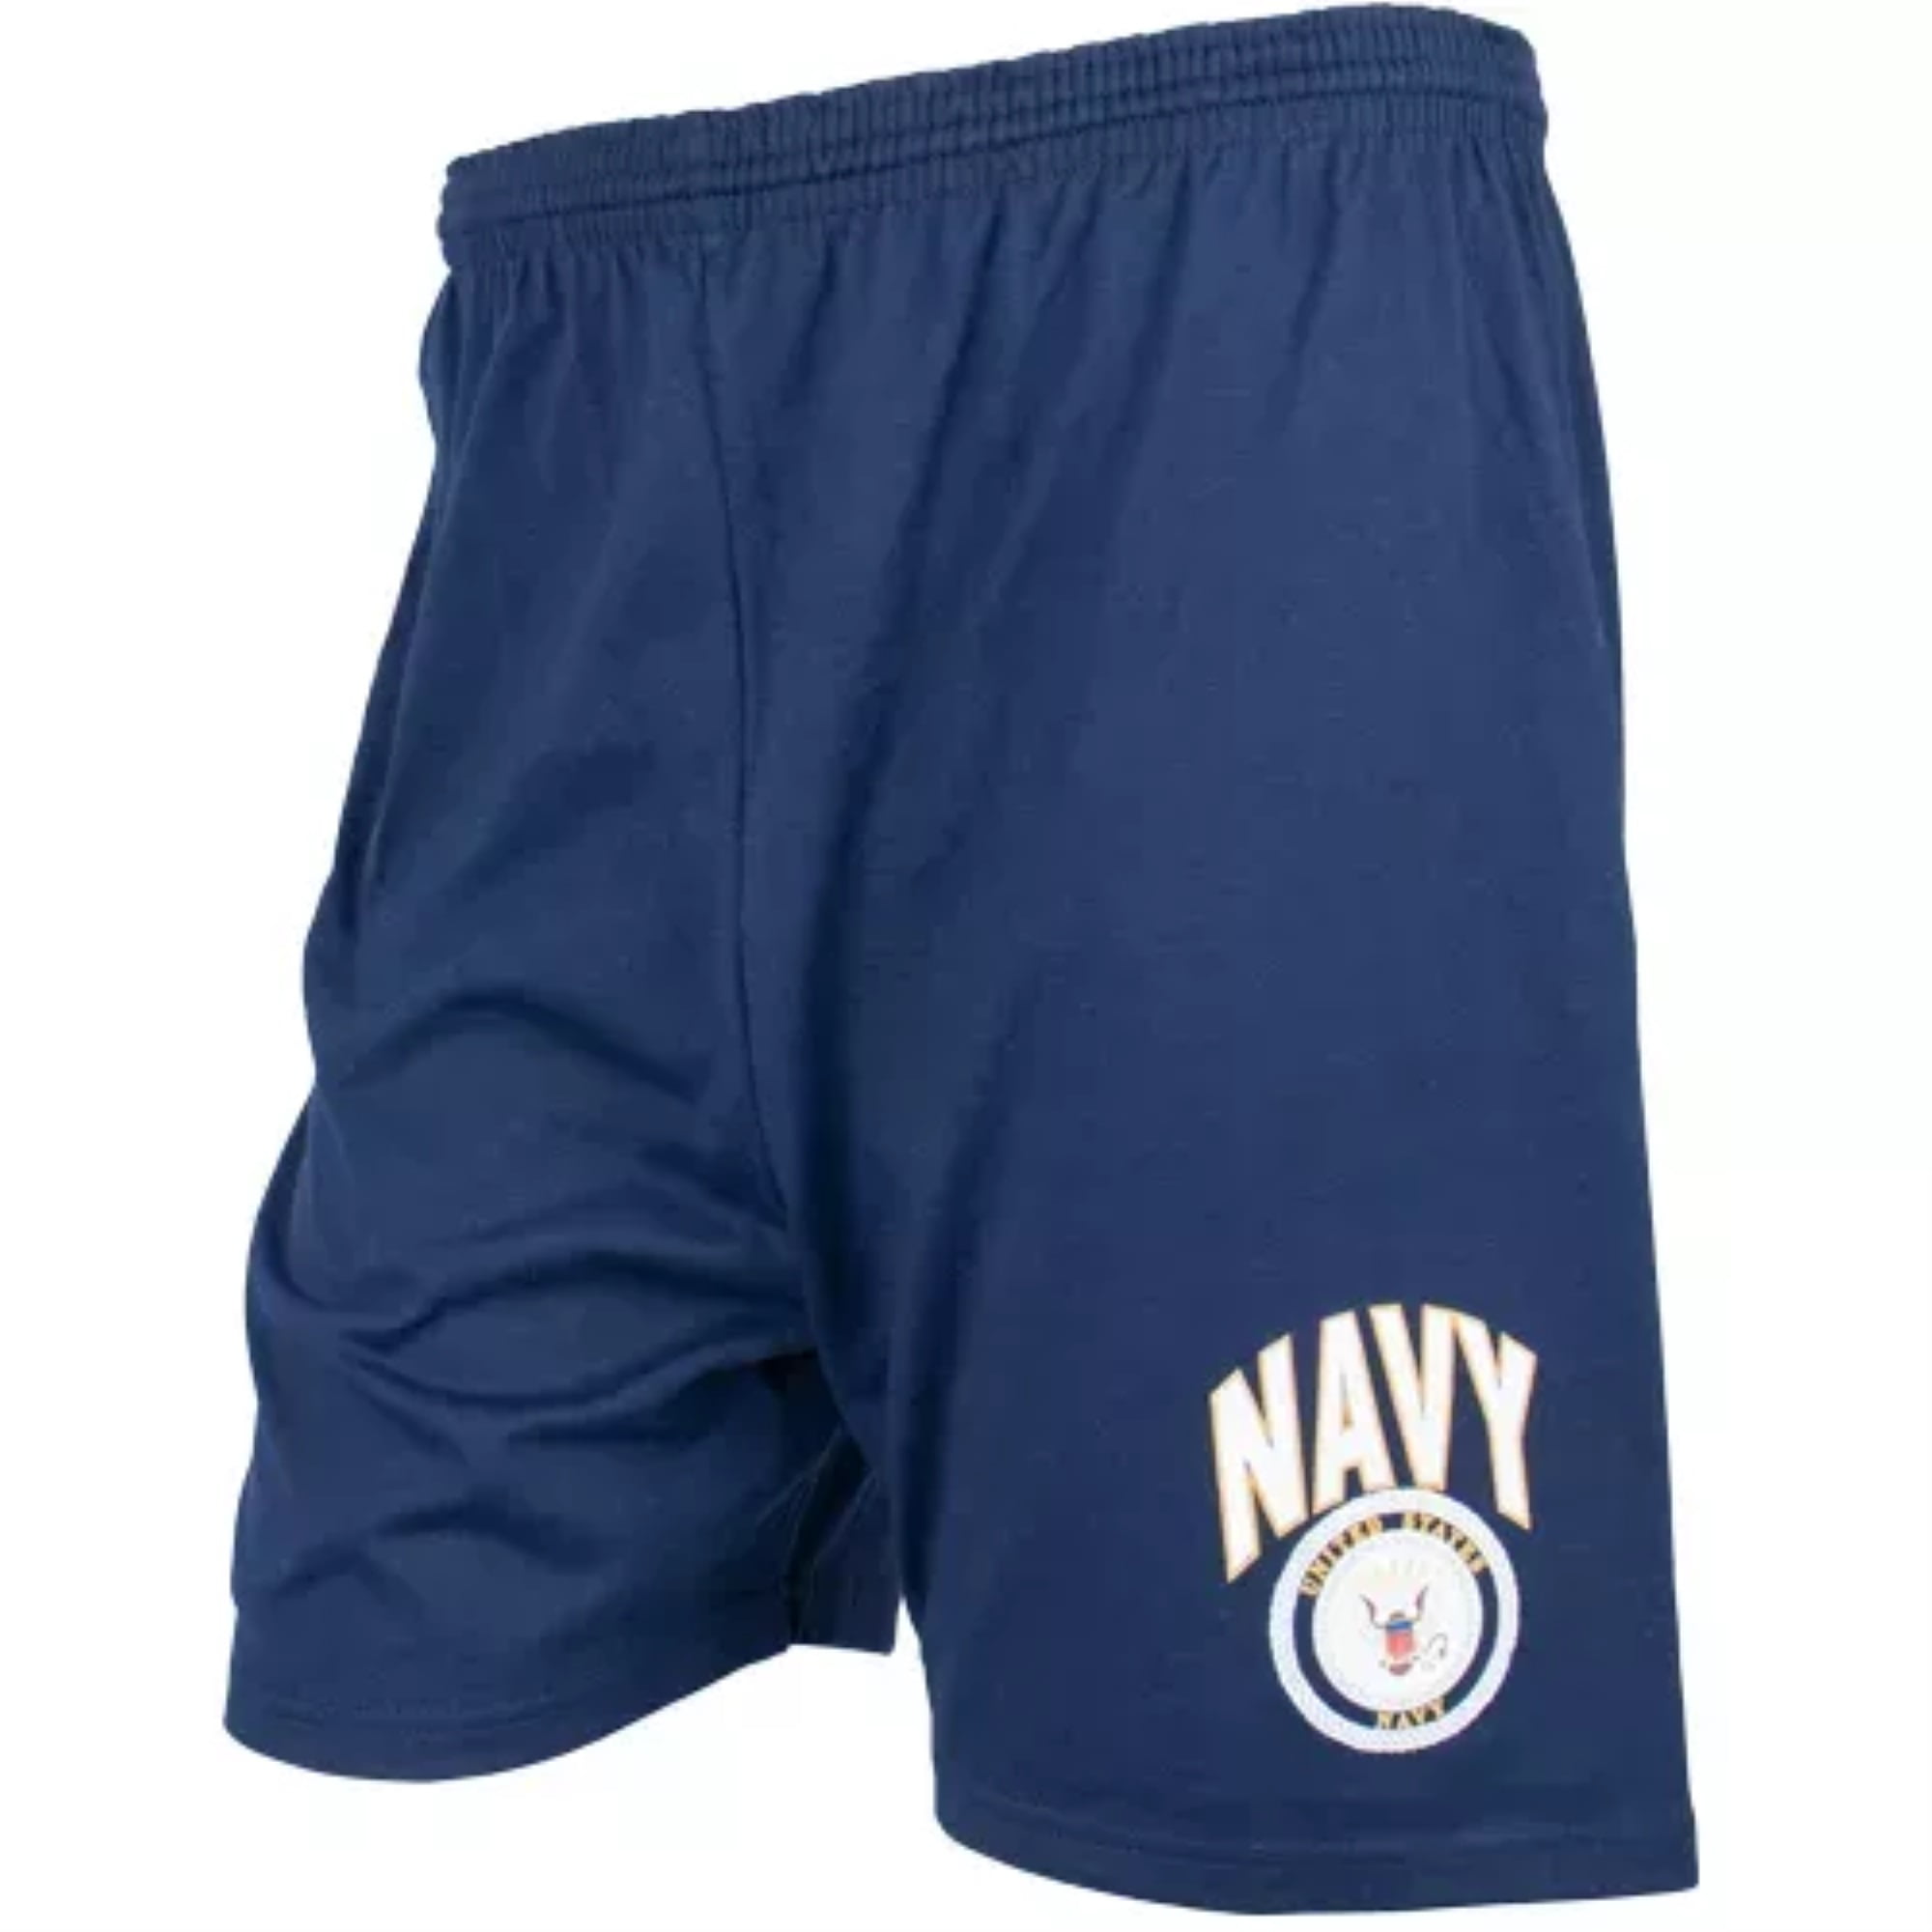 Men's Blue Running Short - Navy With Logo Medium - Walmart.com